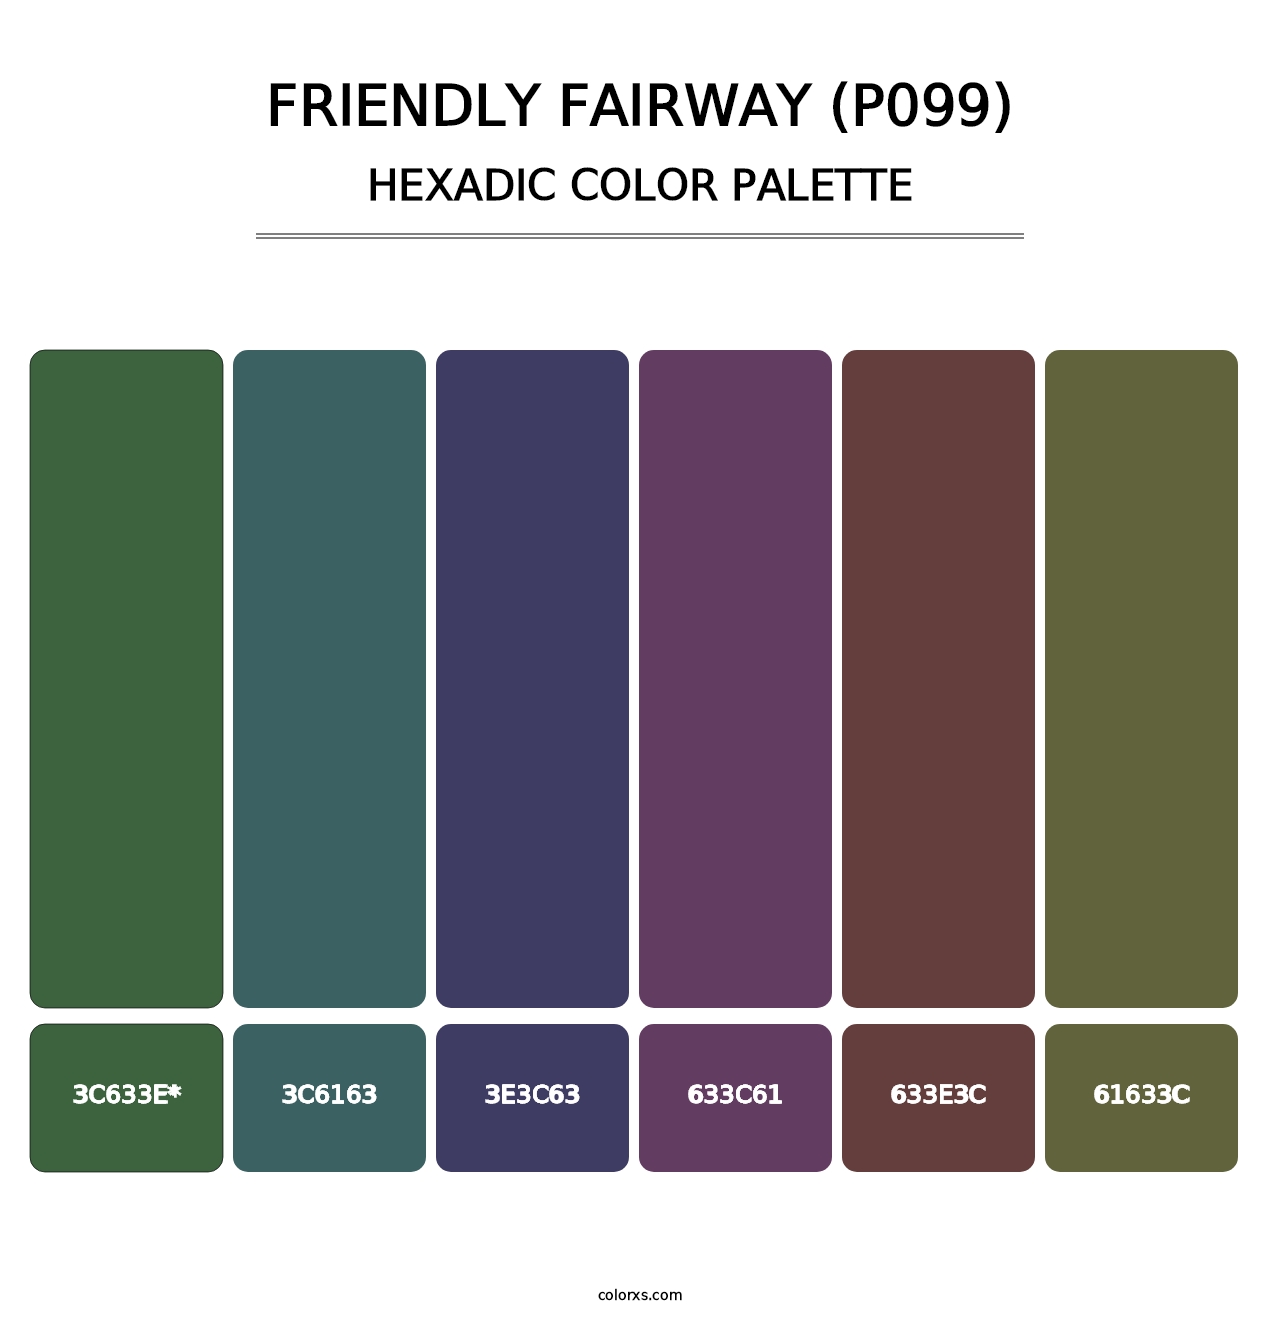 Friendly Fairway (P099) - Hexadic Color Palette